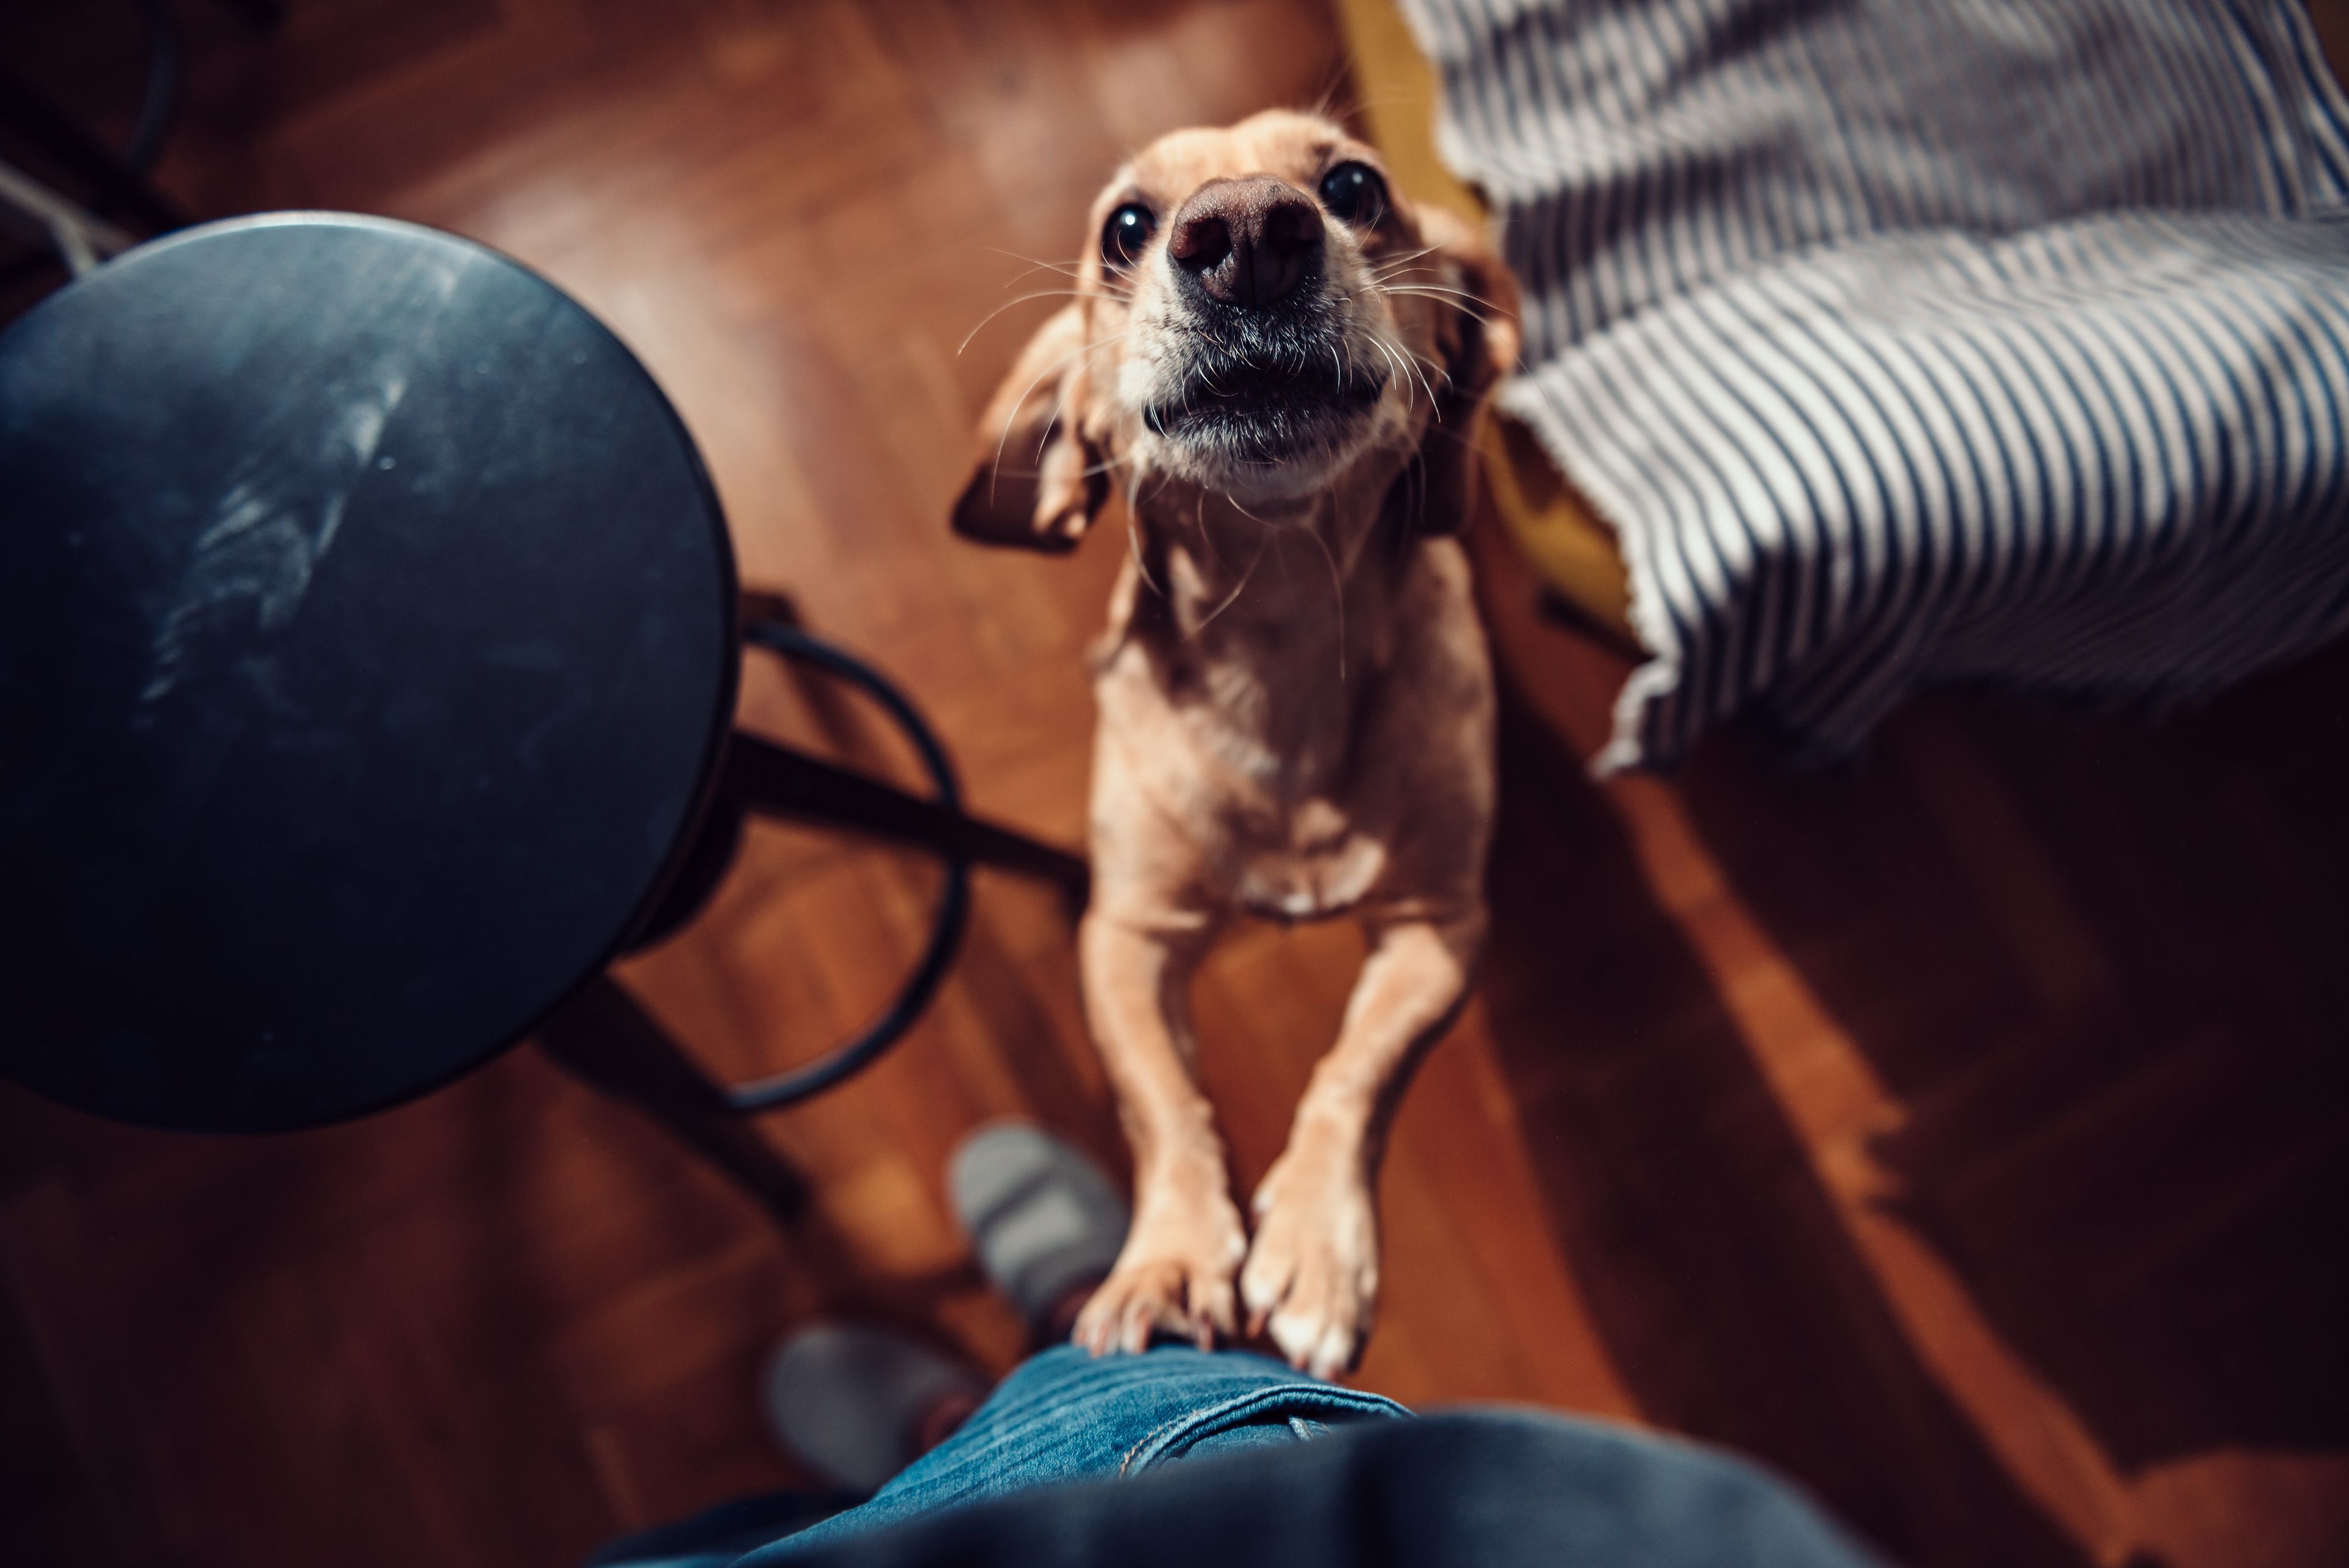 yeso Suponer Incorporar Por qué tu perro salta sobre ti cuando llegas a casa, según los expertos |  Business Insider España